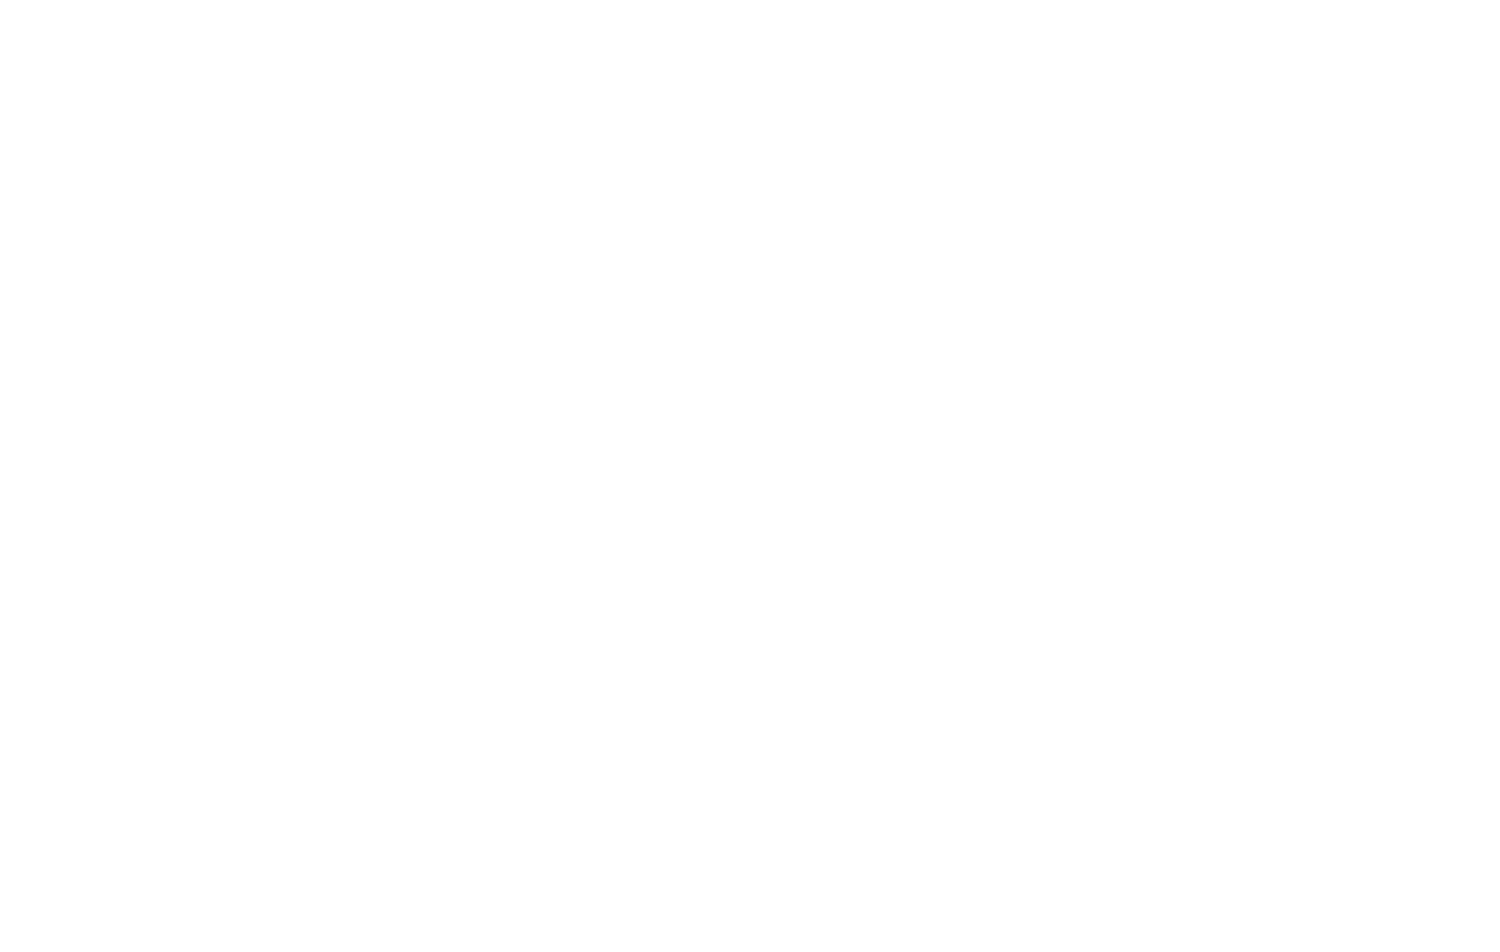 BLUEBIRD FINISHING